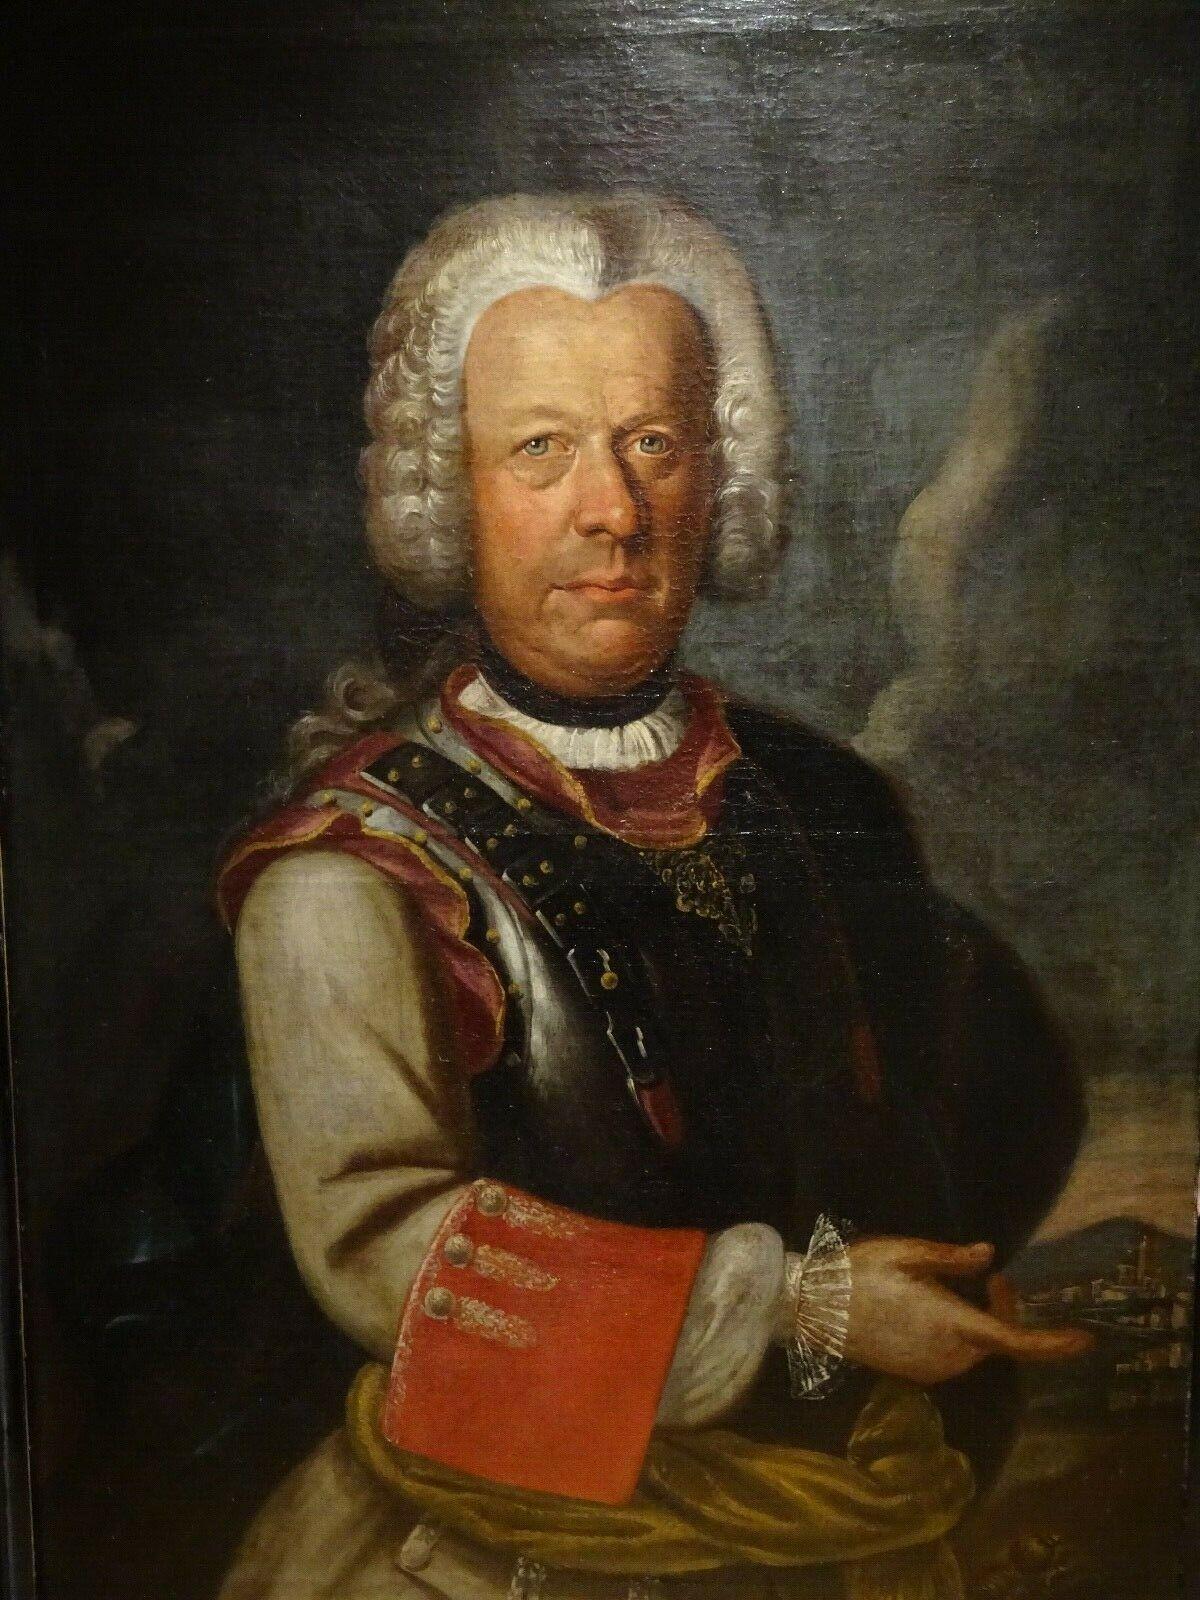 Porträt eines noblemanischen und militärischen Offiziers aus Piedmont, Savoyen, frühes 18. Jahrhundert